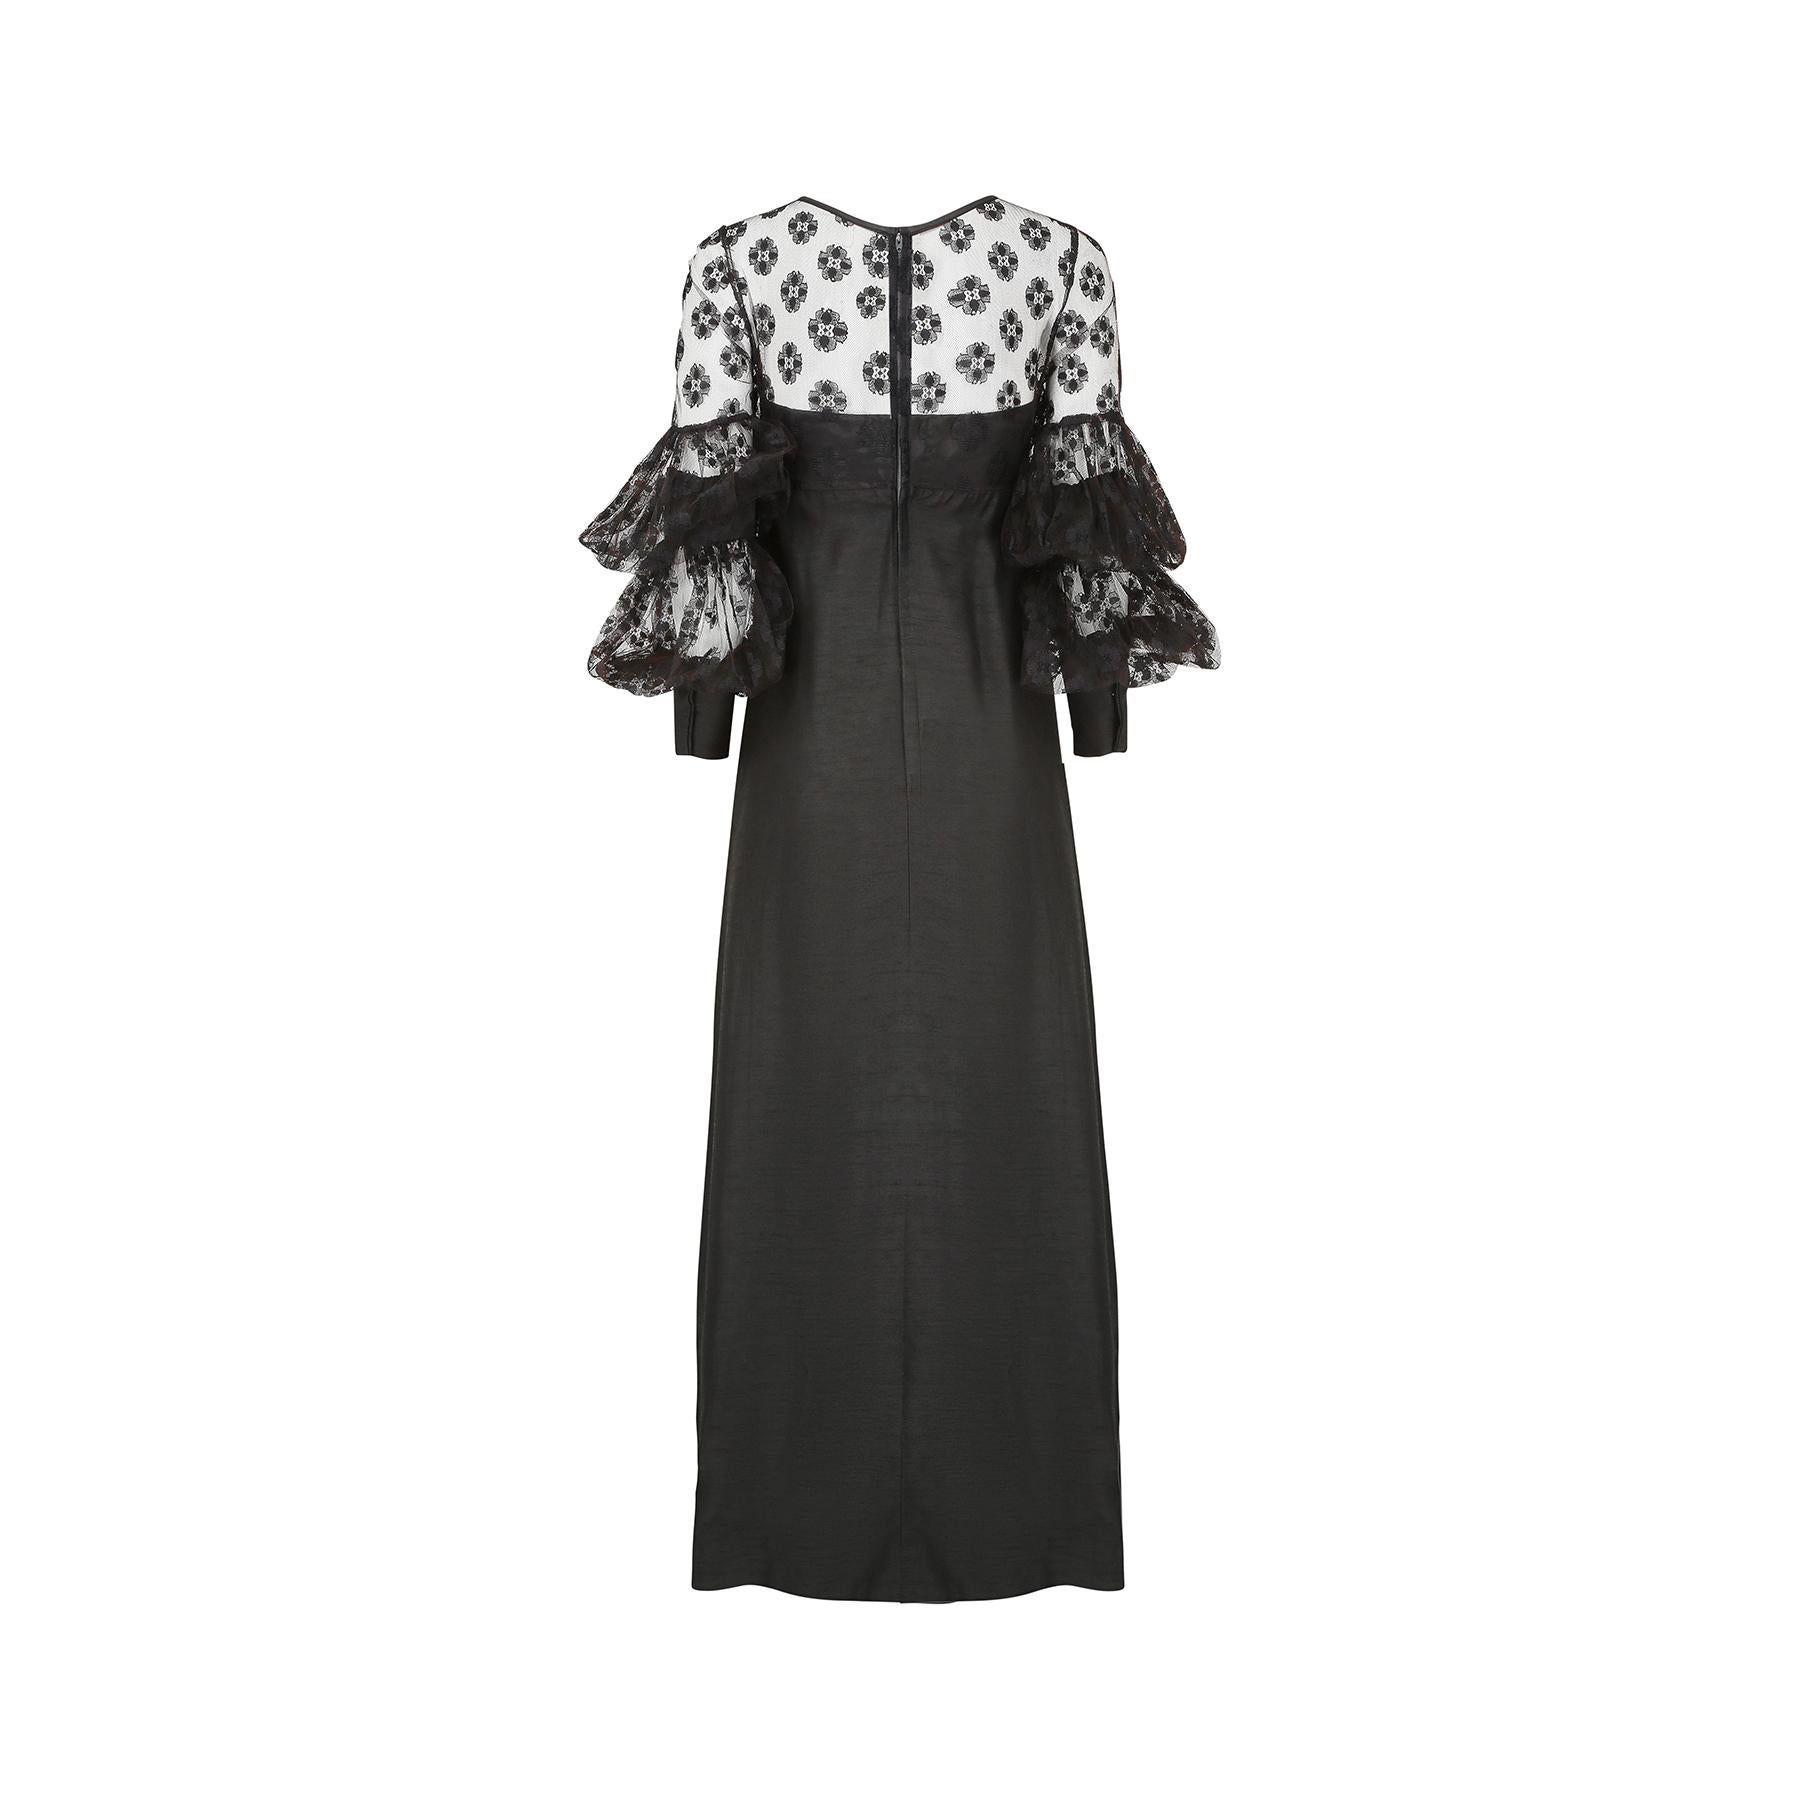 Une très belle robe longue en dentelle noire Jean Varon datant de la fin des années 1960 avec un design de manche spectaculaire qui n'a pas une mais deux sections de ballons en dentelle et une manchette allongée.  La dentelle est un motif floral